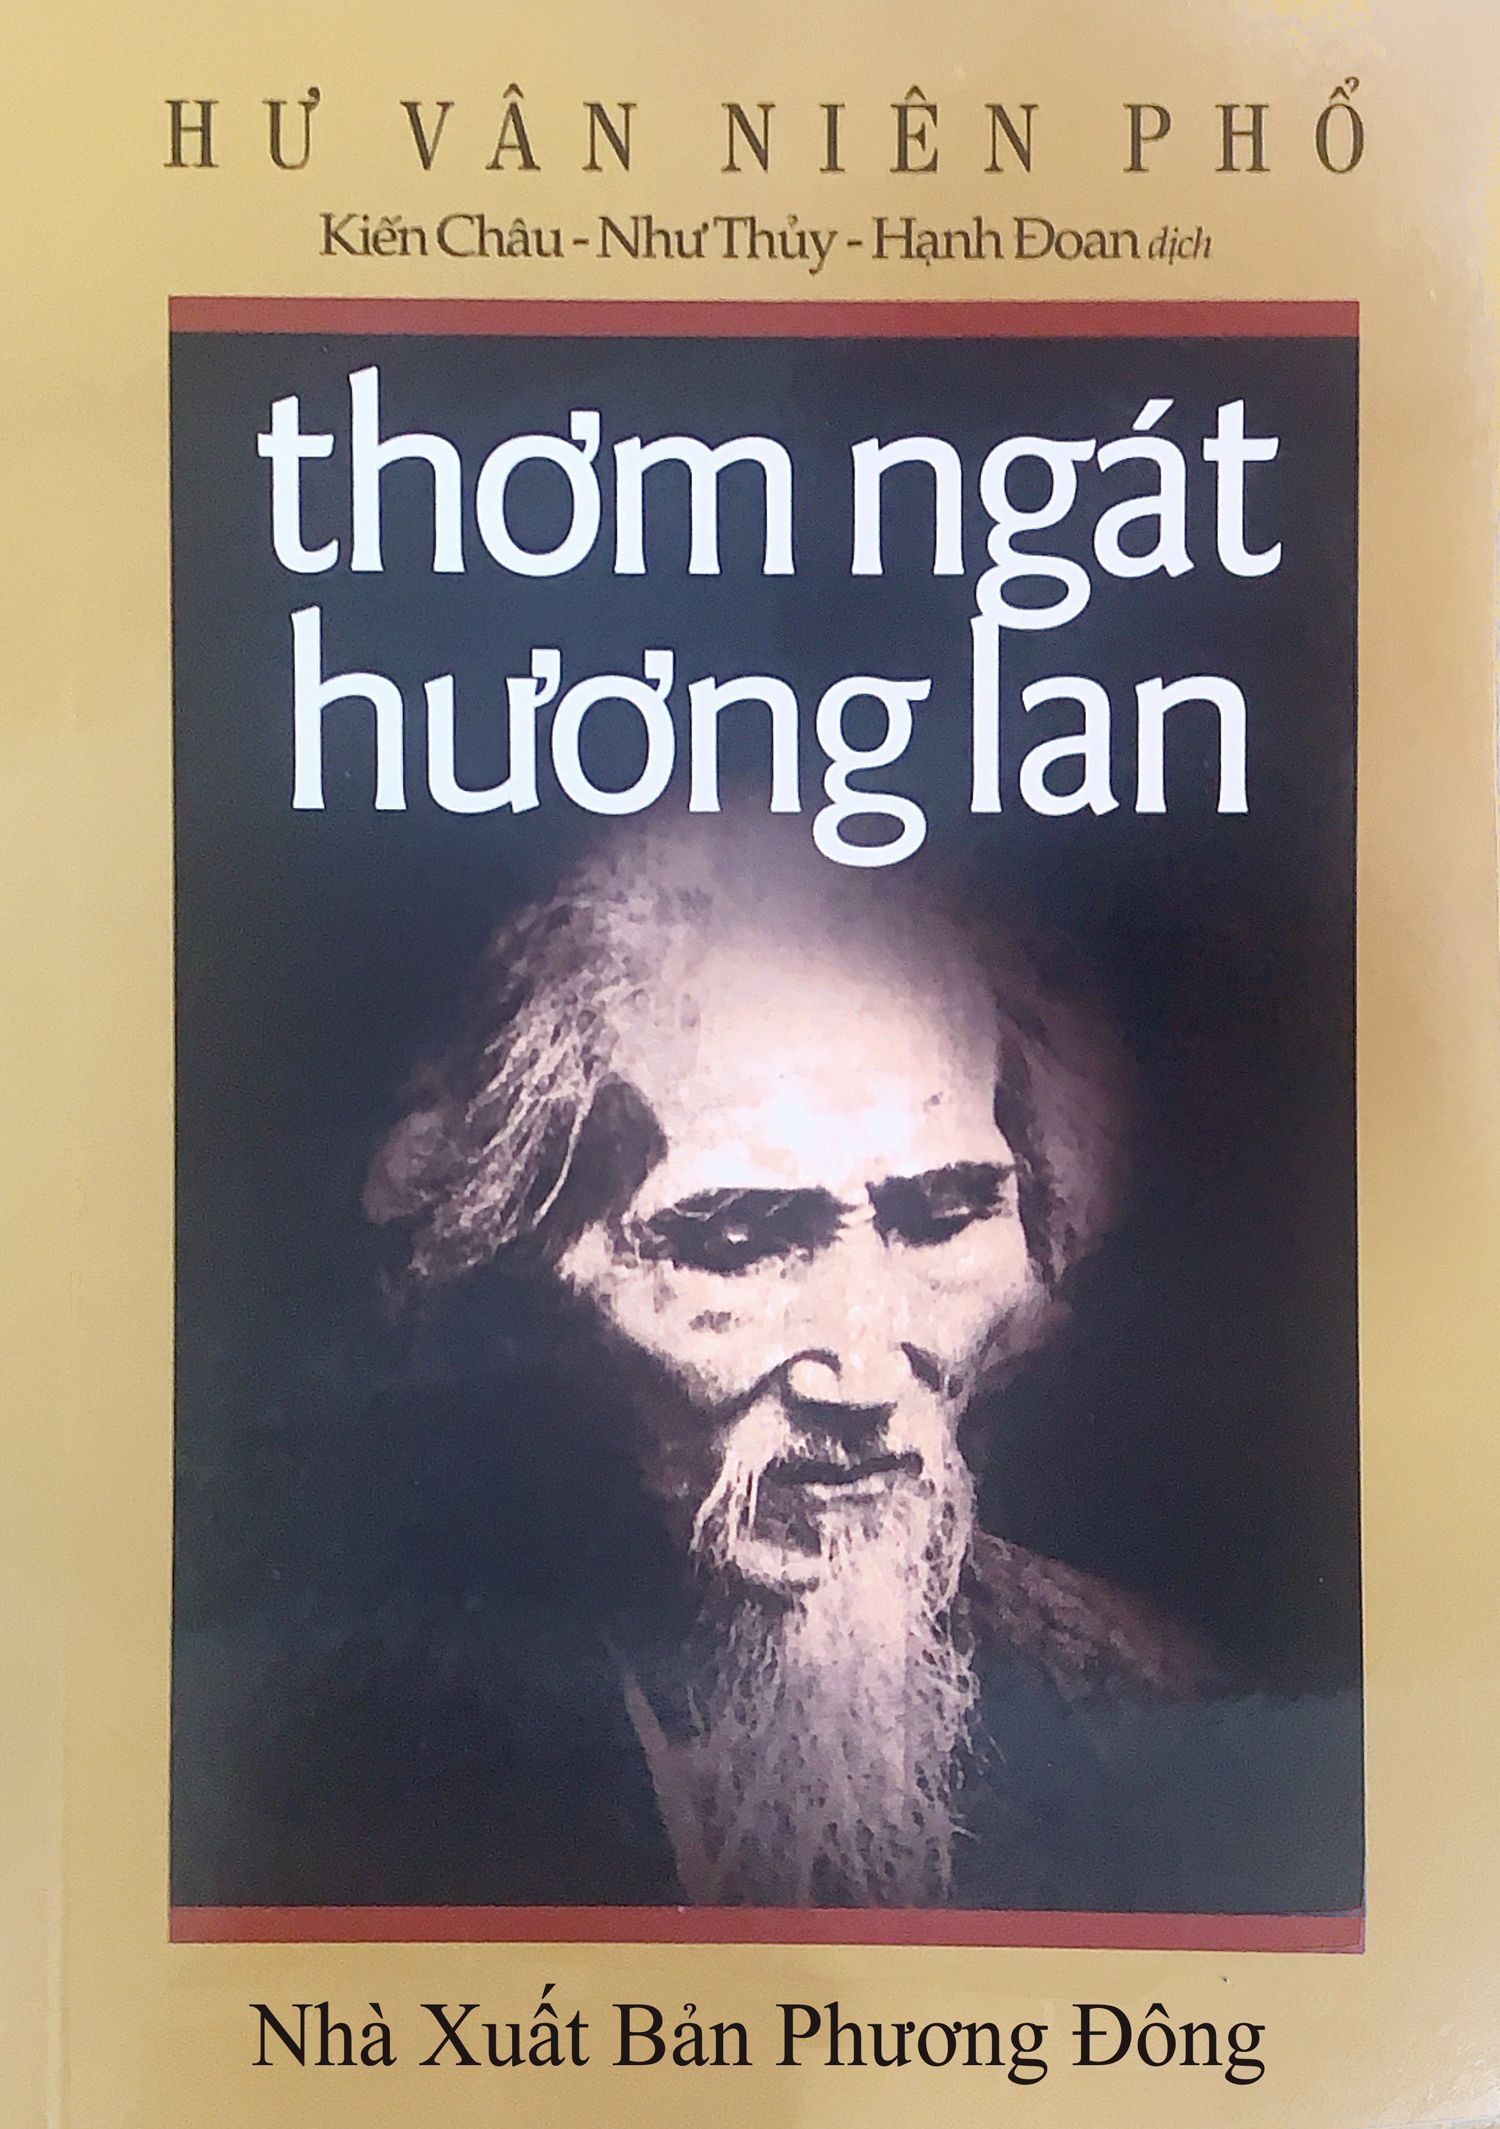 Thơm Ngát Hương Lan